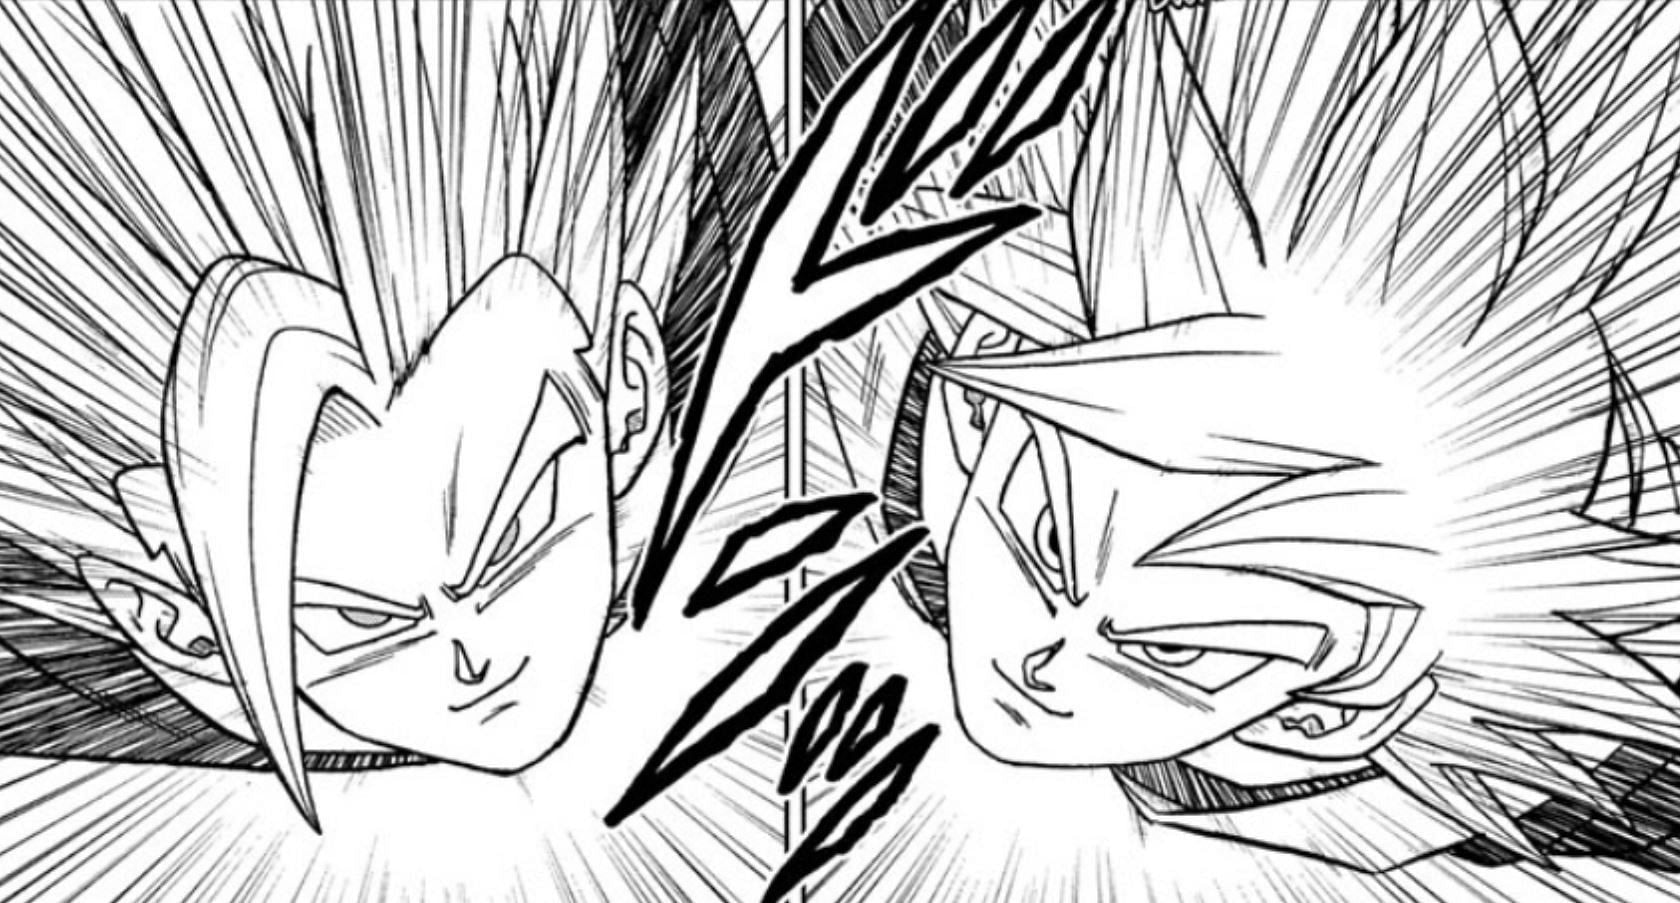 Gohan and Goku as seen in the Dragon Ball Super manga (Image via Shueisha)